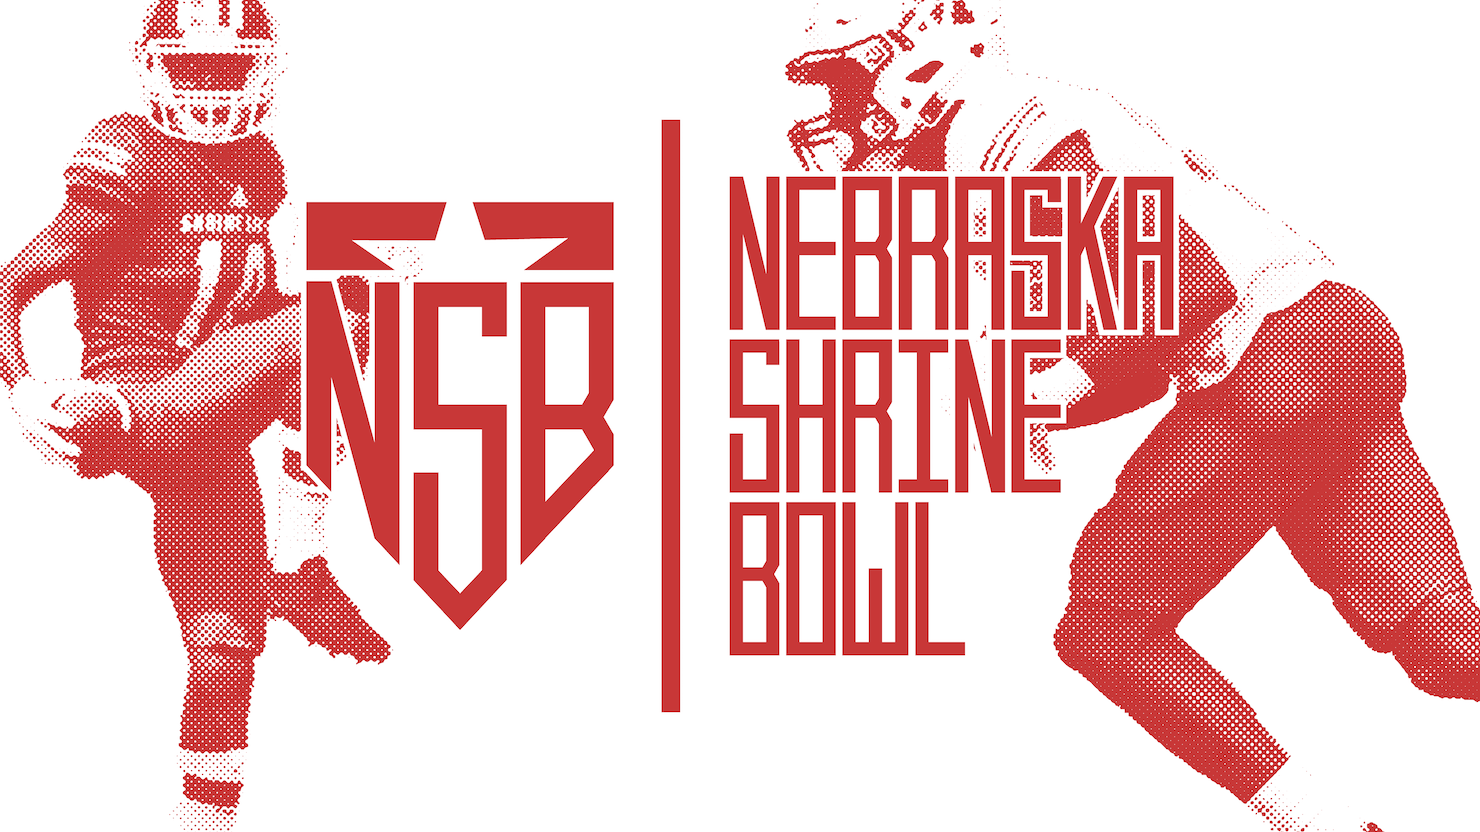 Shrine Bowl of Nebraska